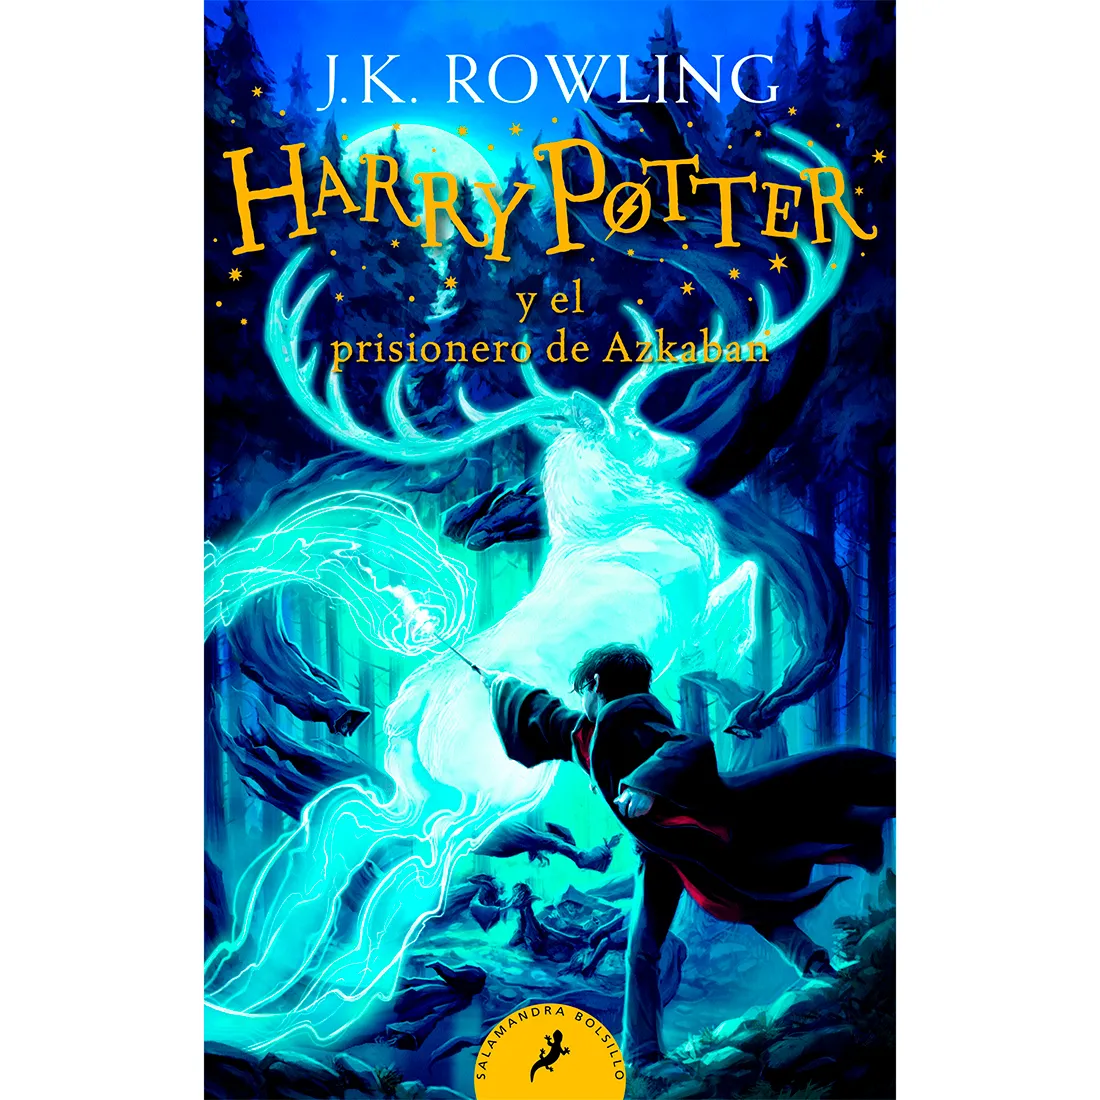 Harry Potter 3 Y El Prisionero De Azkaban. J. K. Rowling